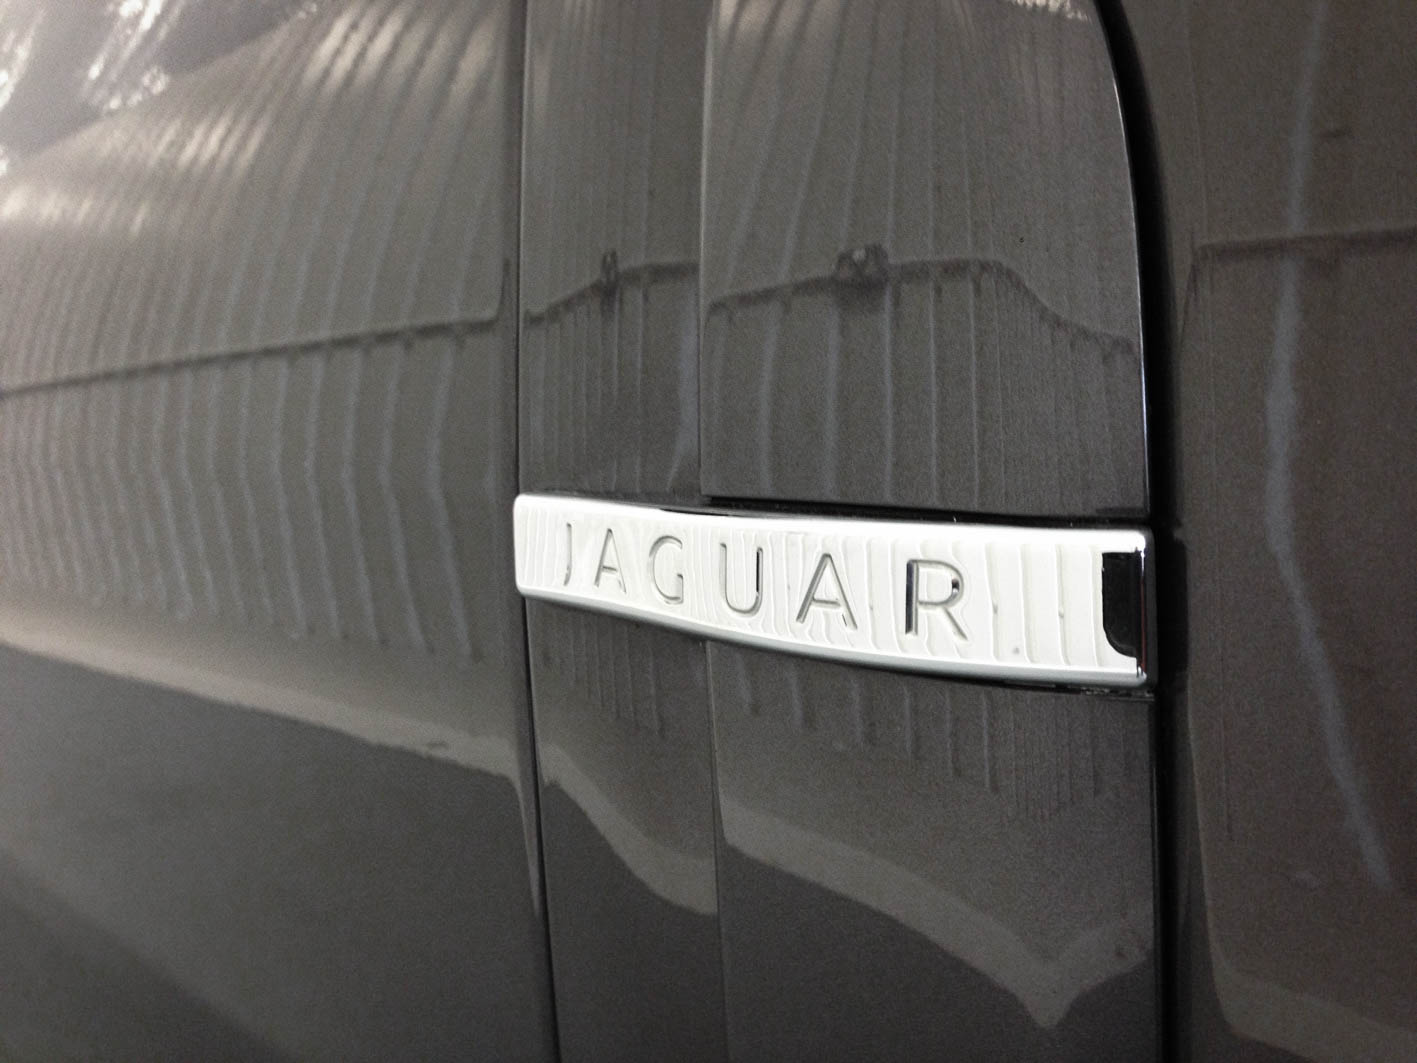 Jaguar XF – Badge detail